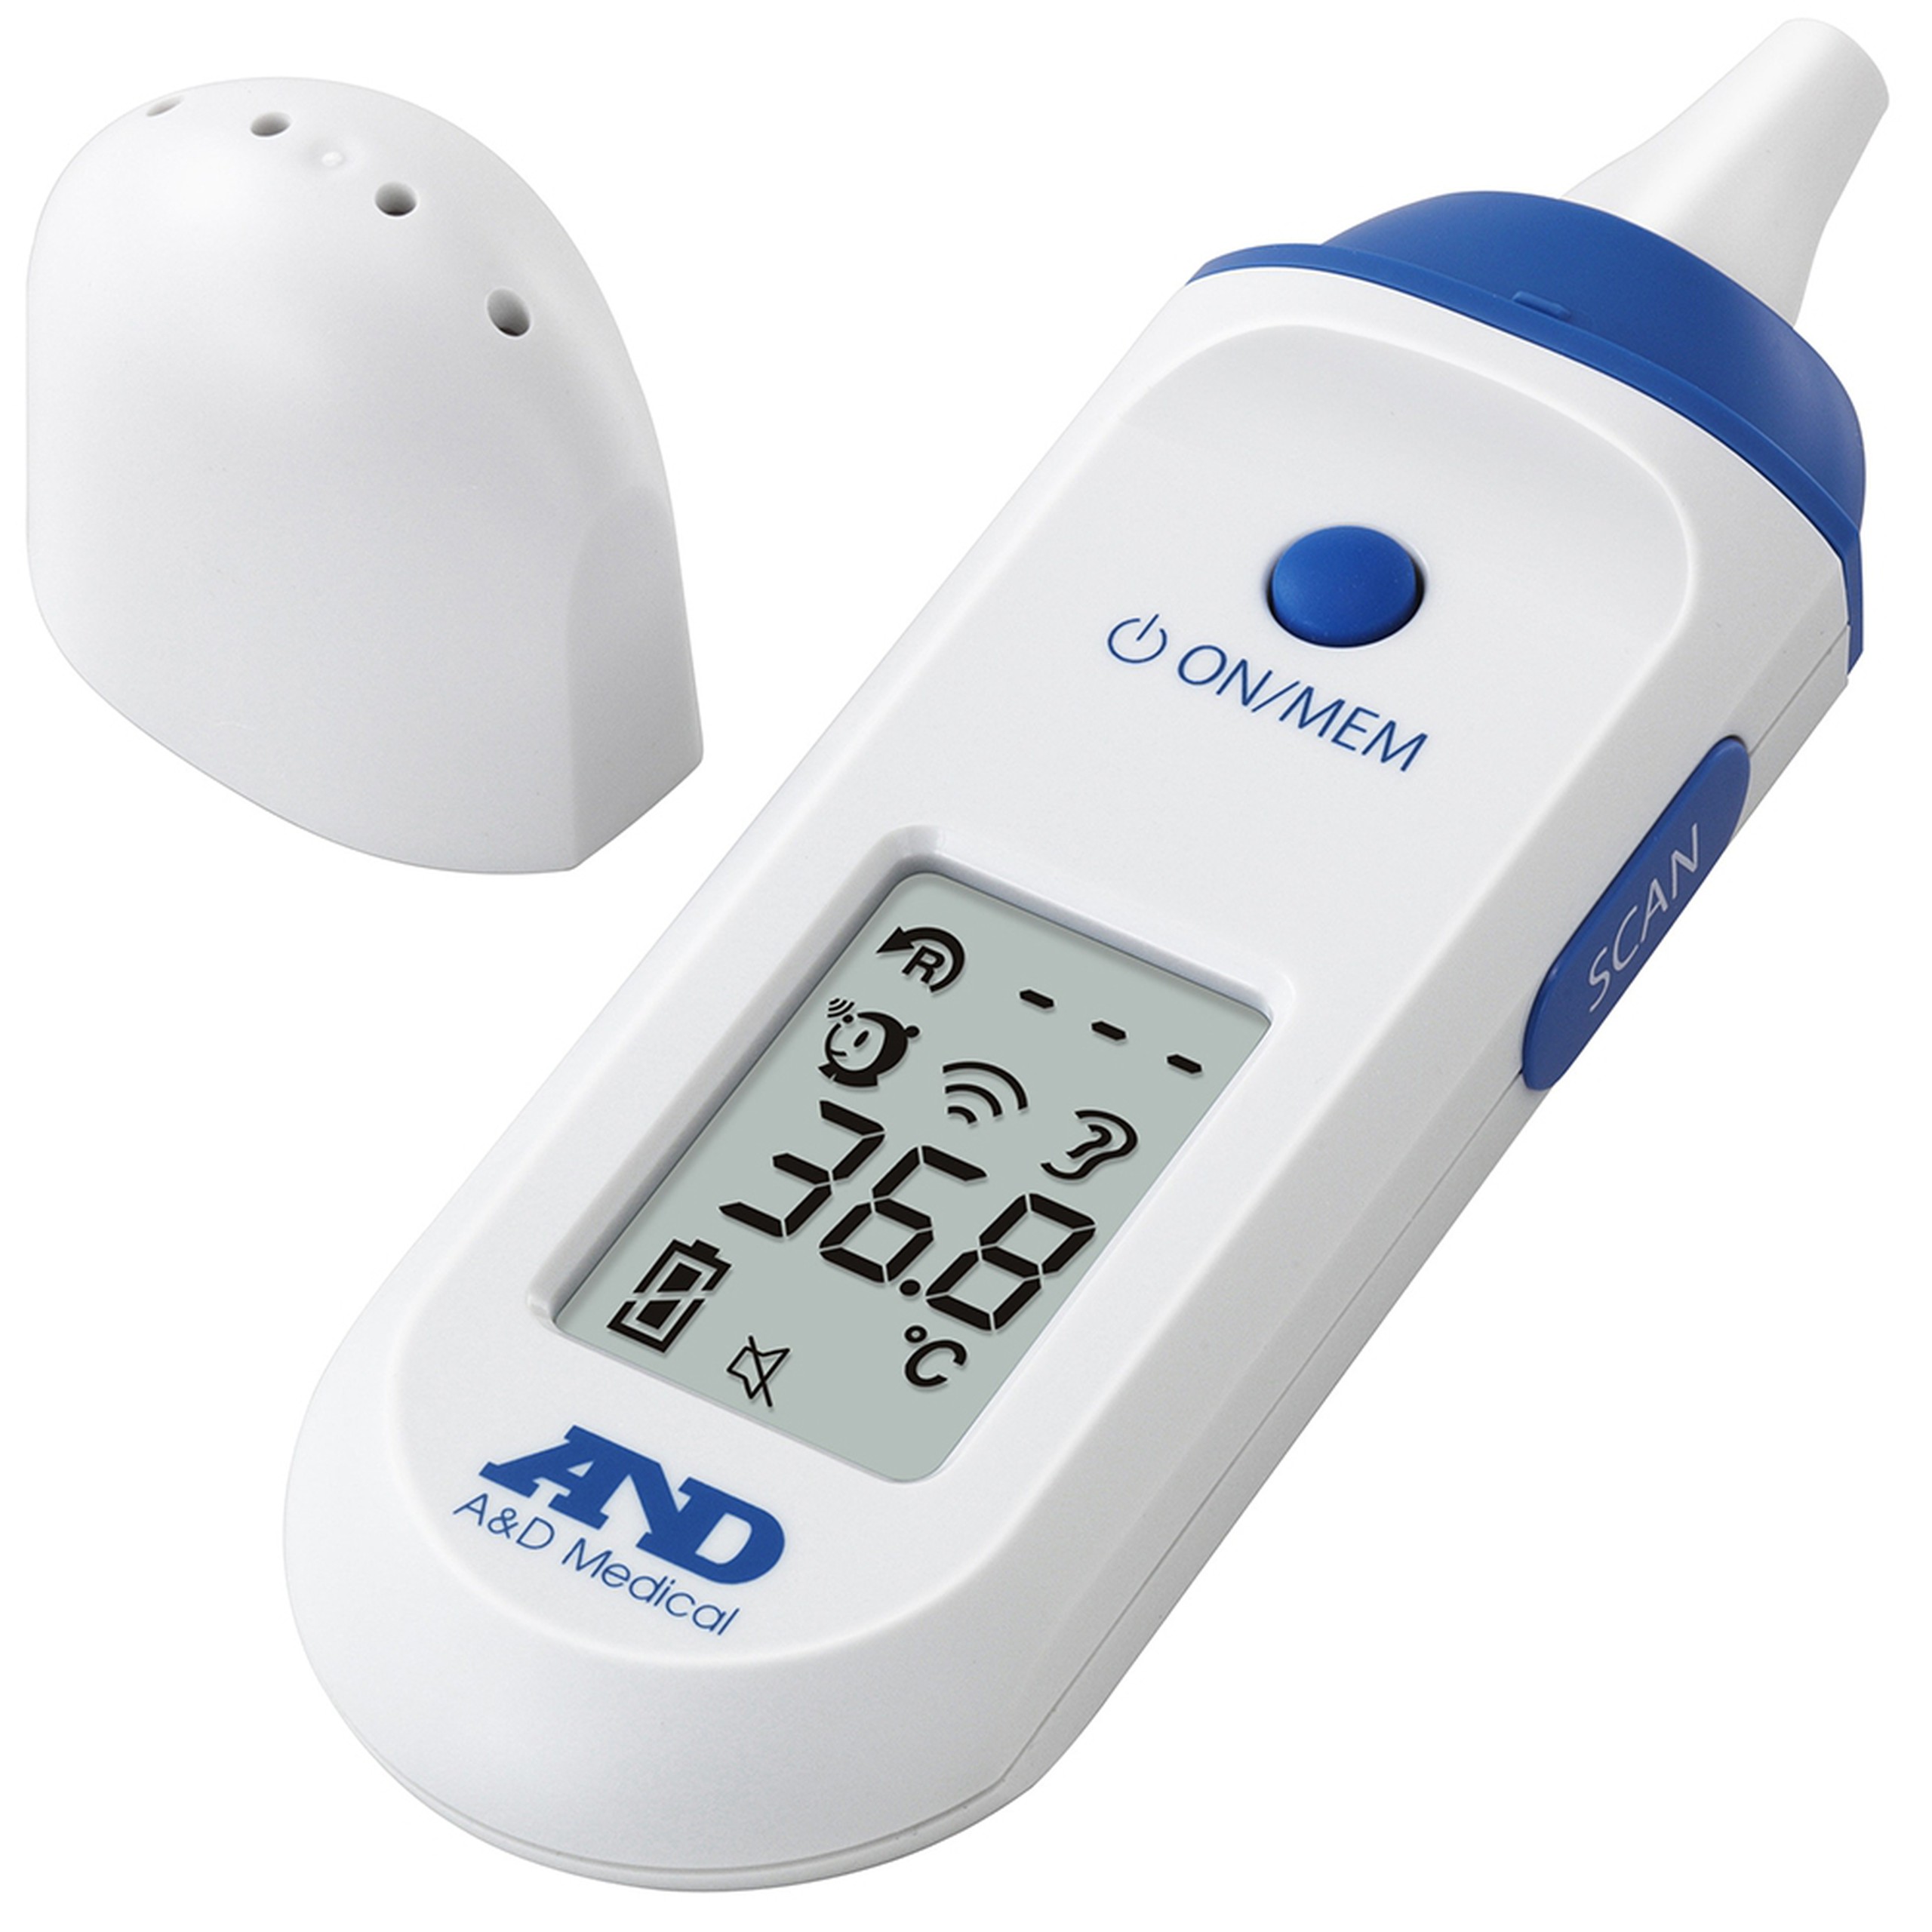 Nhiệt kế hồng ngoại đo tai, trán AND A&D Medical UT-801 đo nhanh, chính xác chỉ sau 1 giây